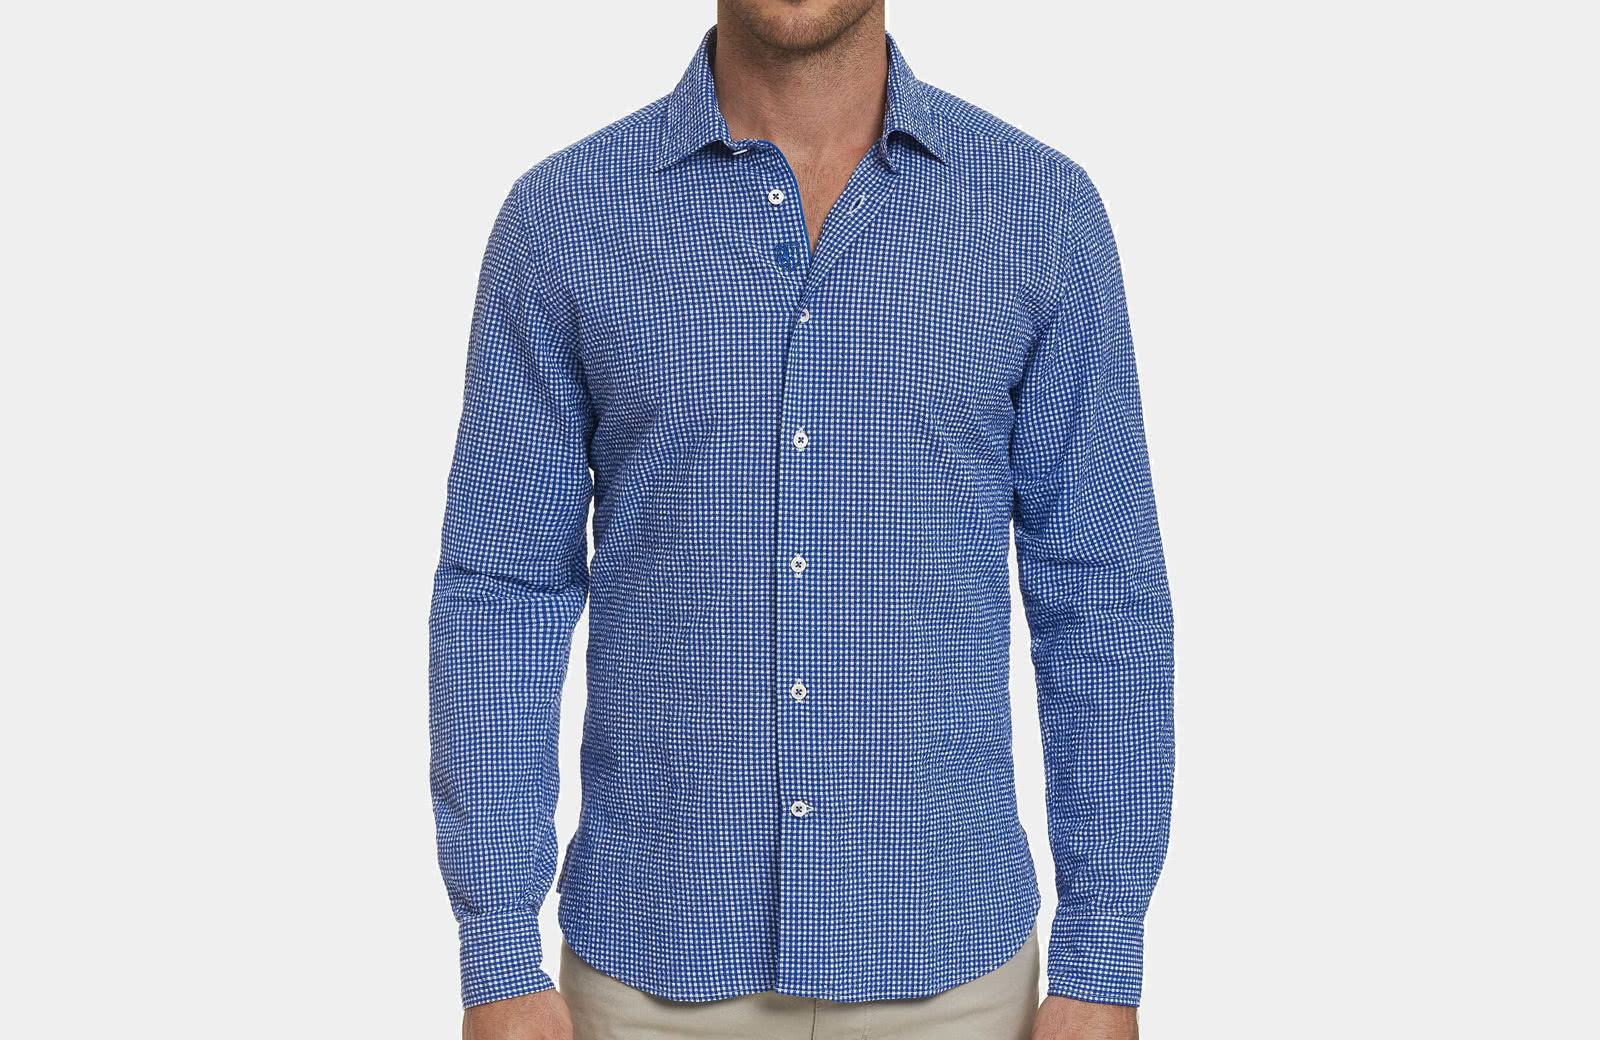 Robert Graham best men summer designer shirt blue checks - Luxe Digital